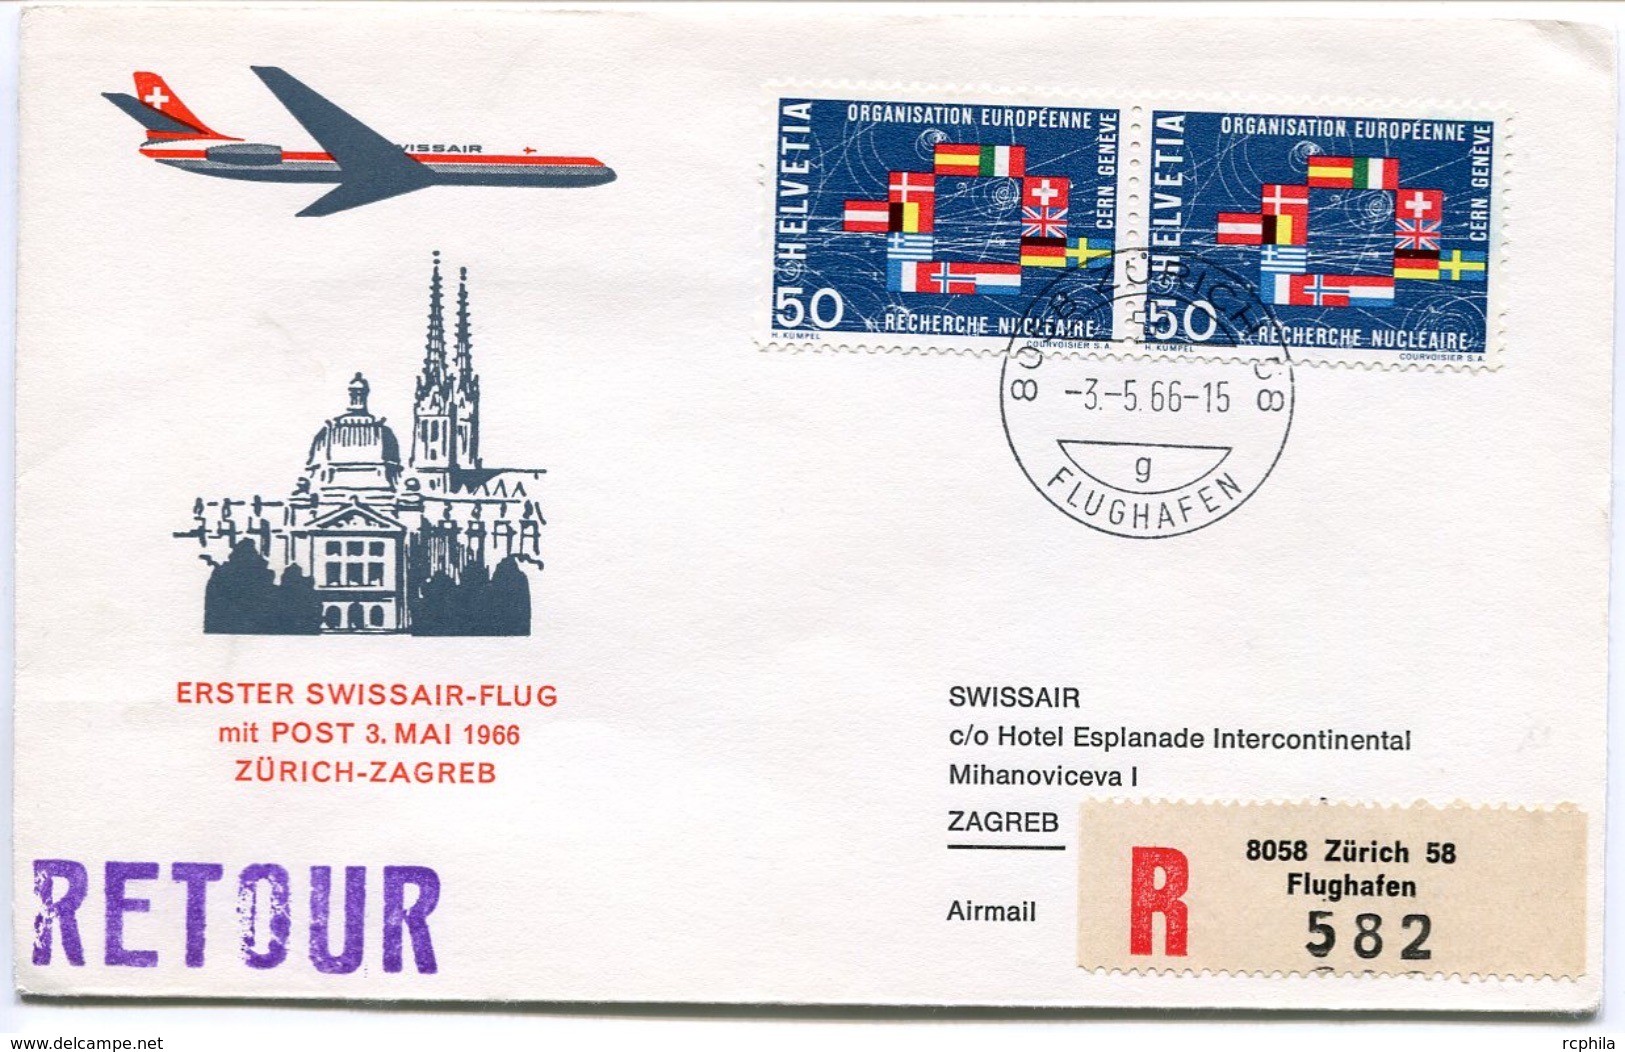 RC 6596 SUISSE SWITZERLAND 1966 1er VOL SWISSAIR ZURICH - ZAGREB YOUGOSLAVIE FFC LETTRE COVER - Primi Voli